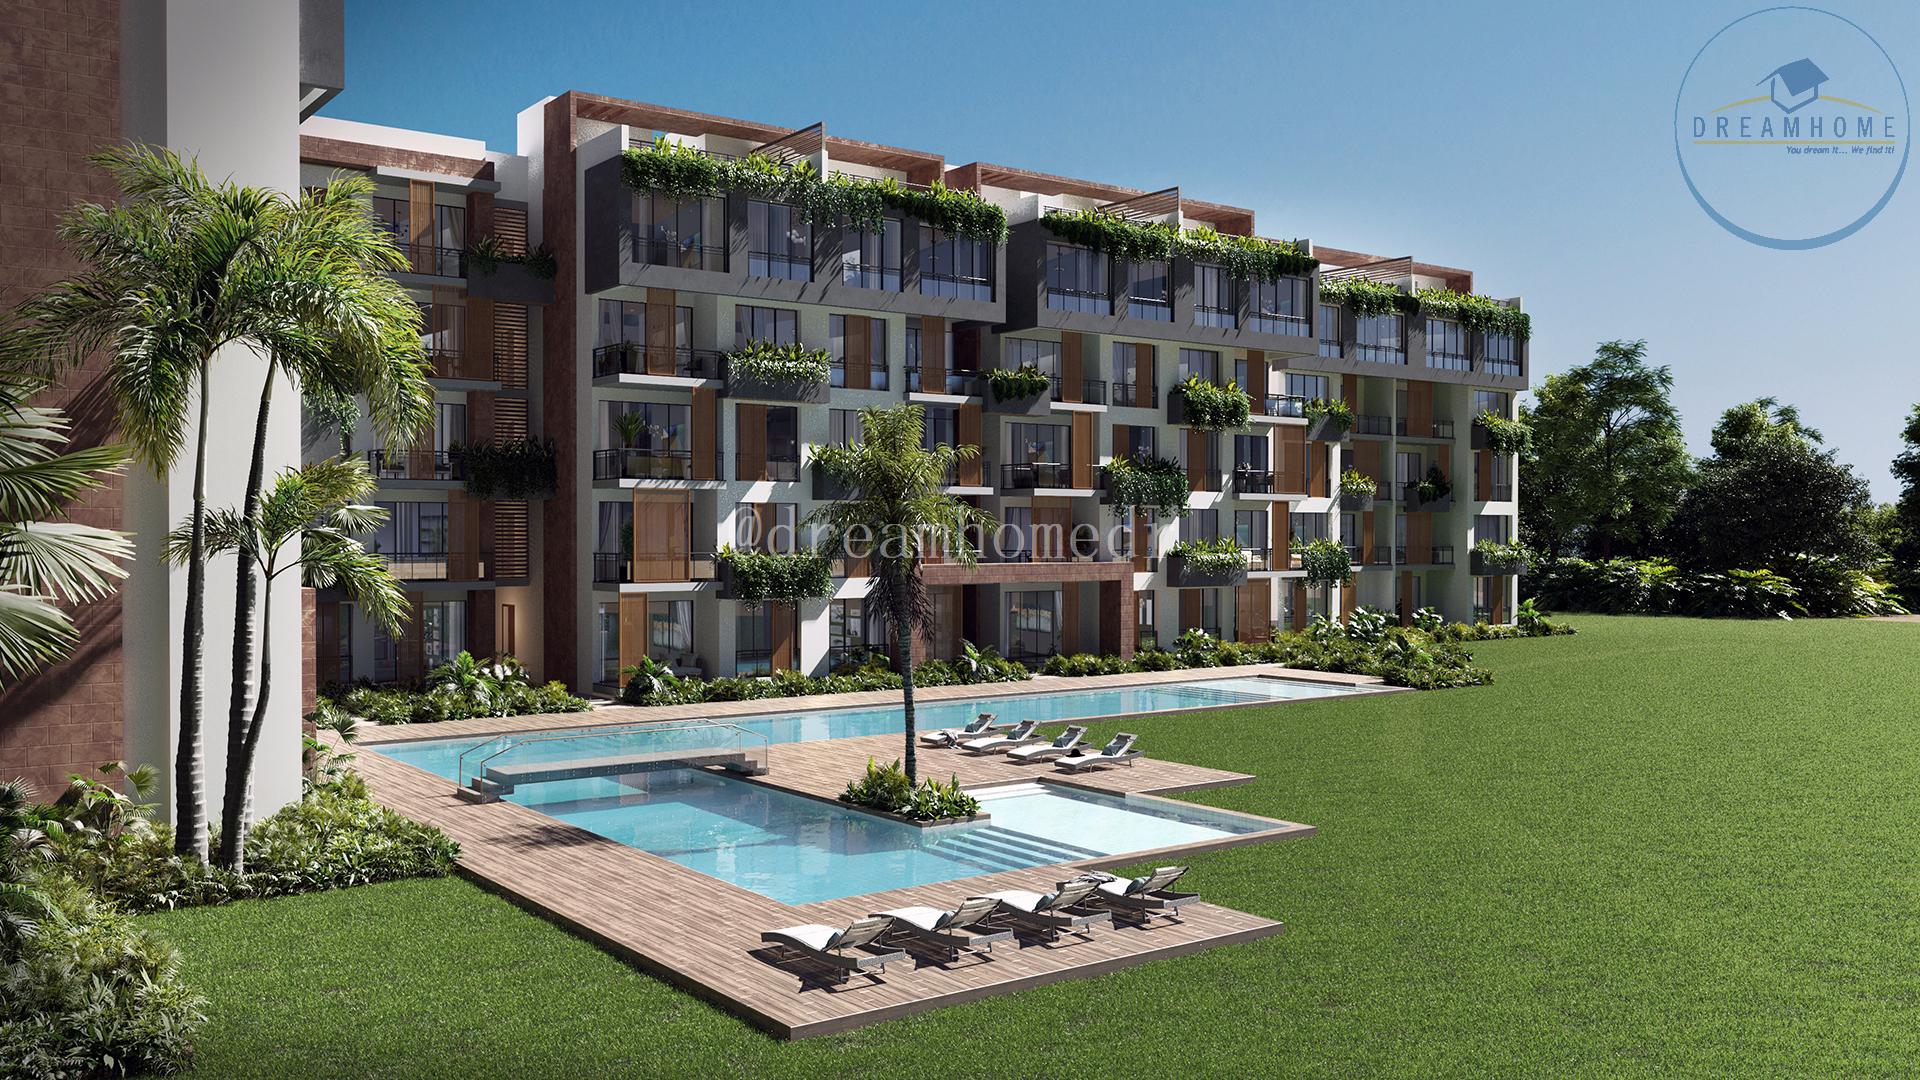 apartamentos - El lugar perfecto para vivir tus sueños en Punta Cana ID 3326